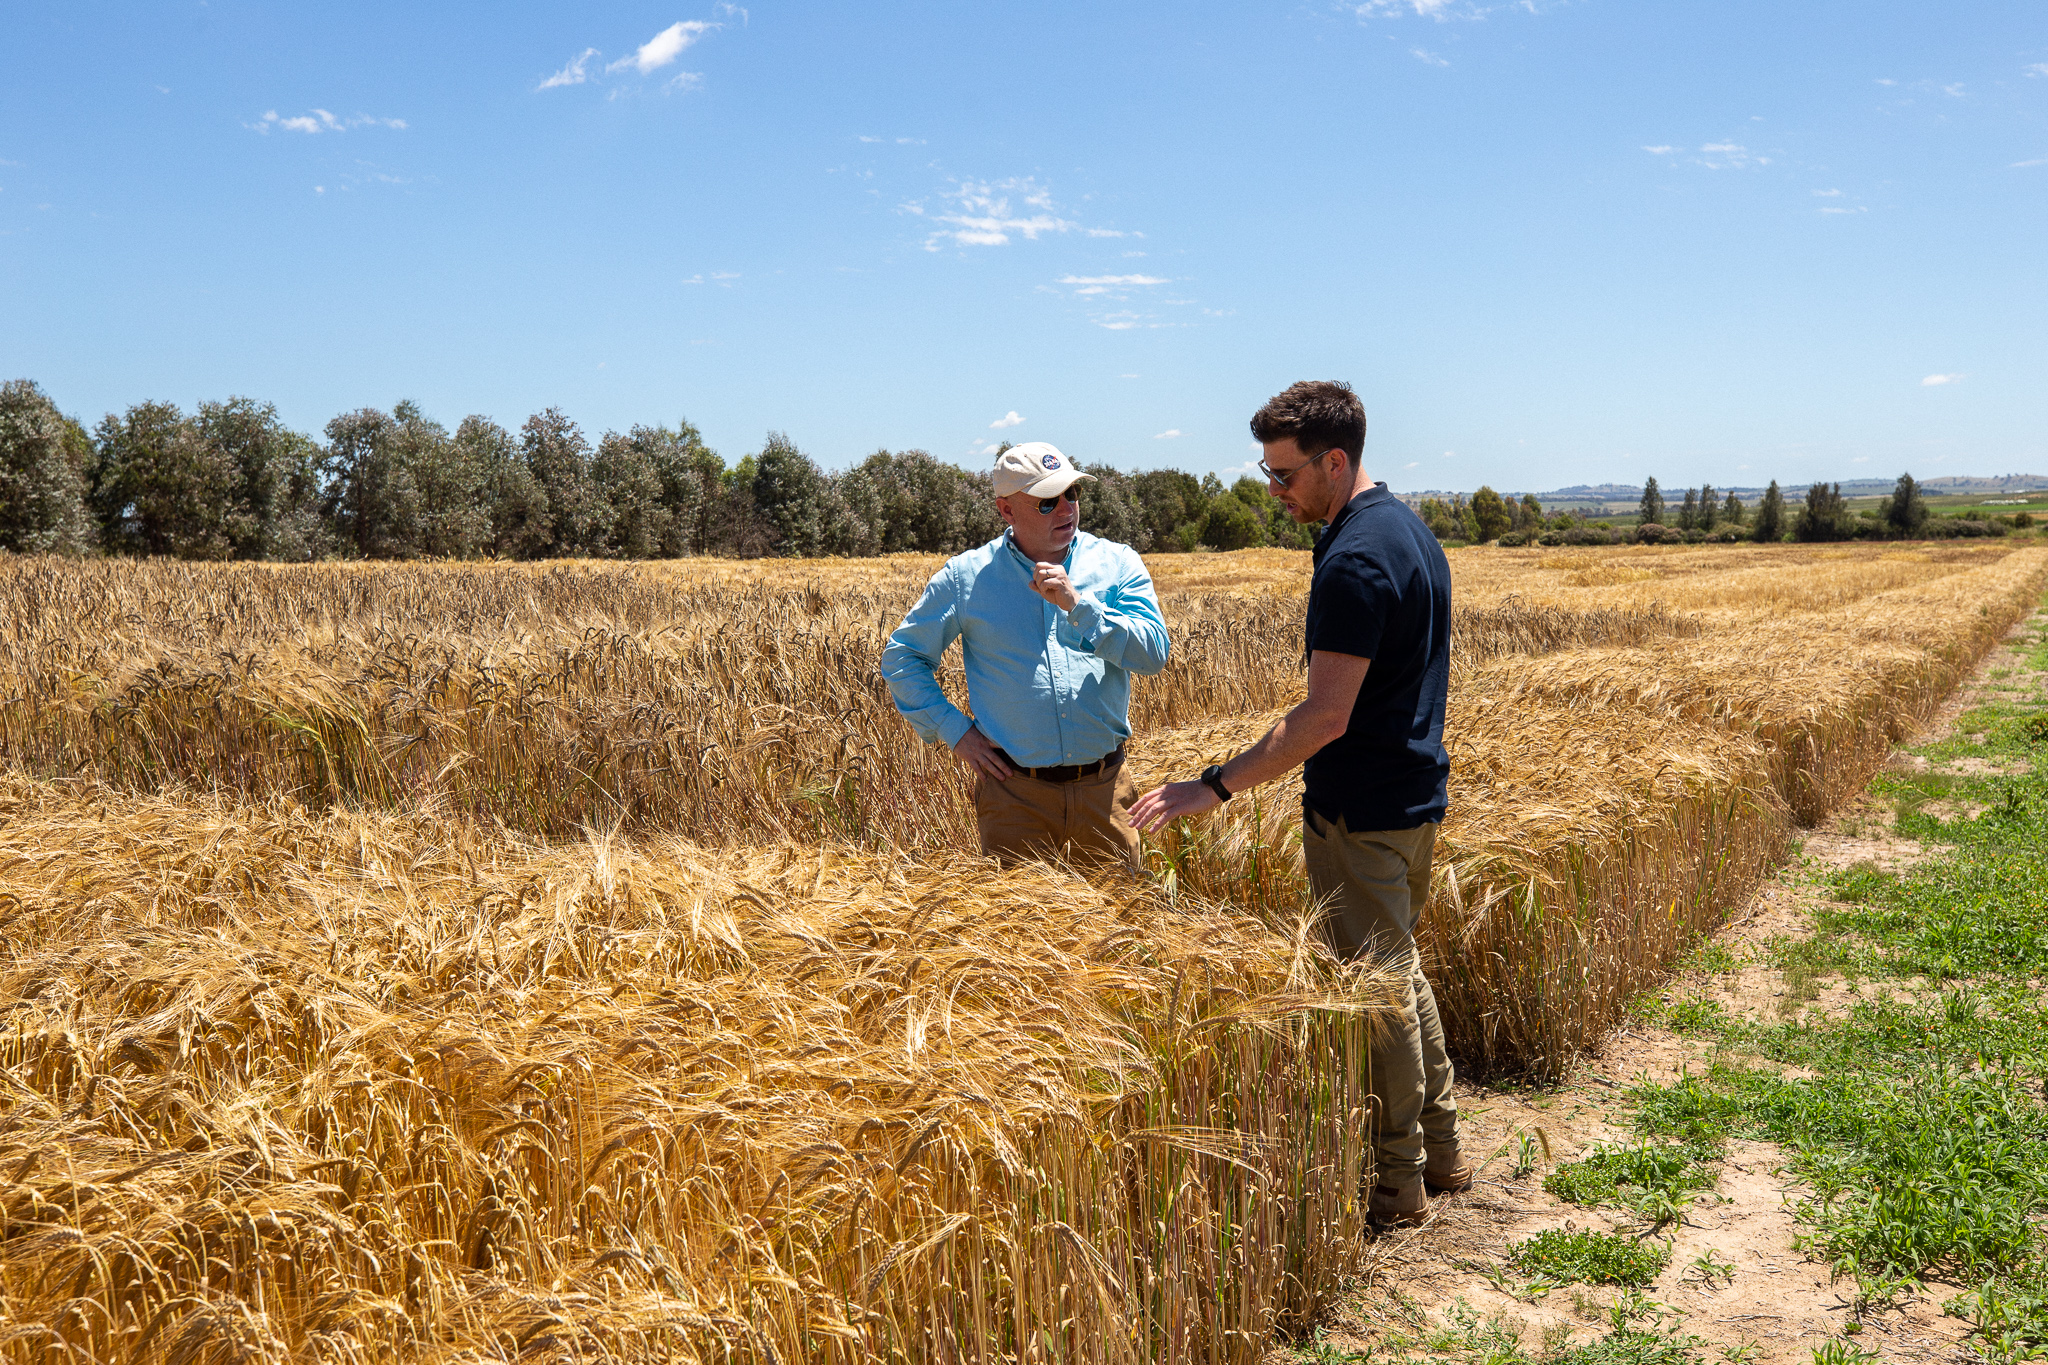 Two male people talking in a wheat field